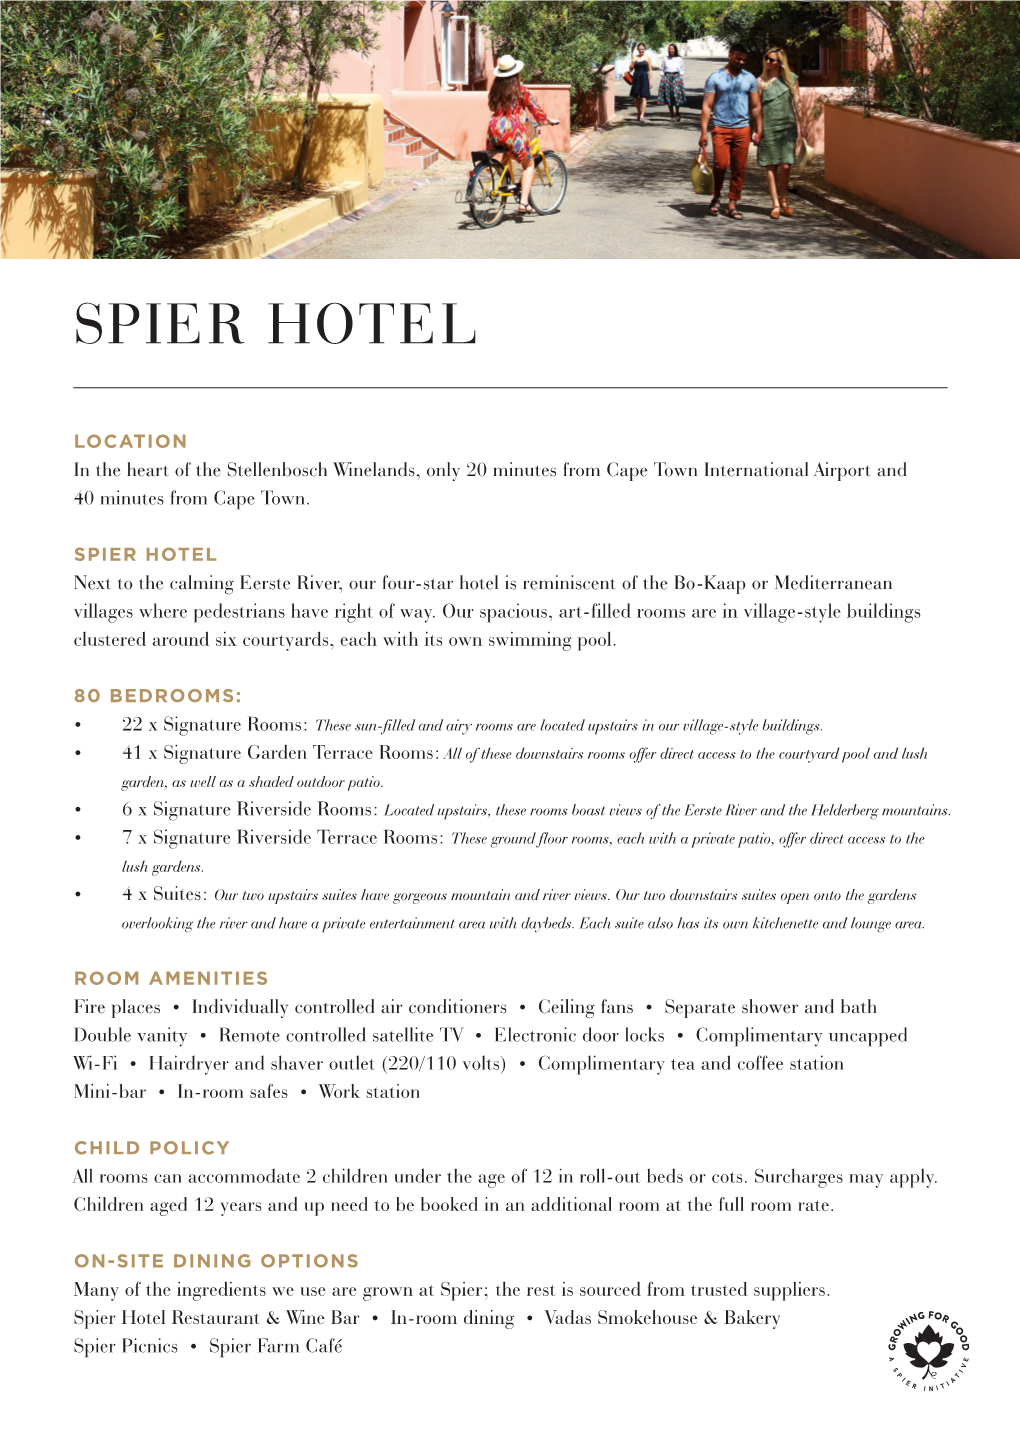 Spier Hotel Fact Sheet